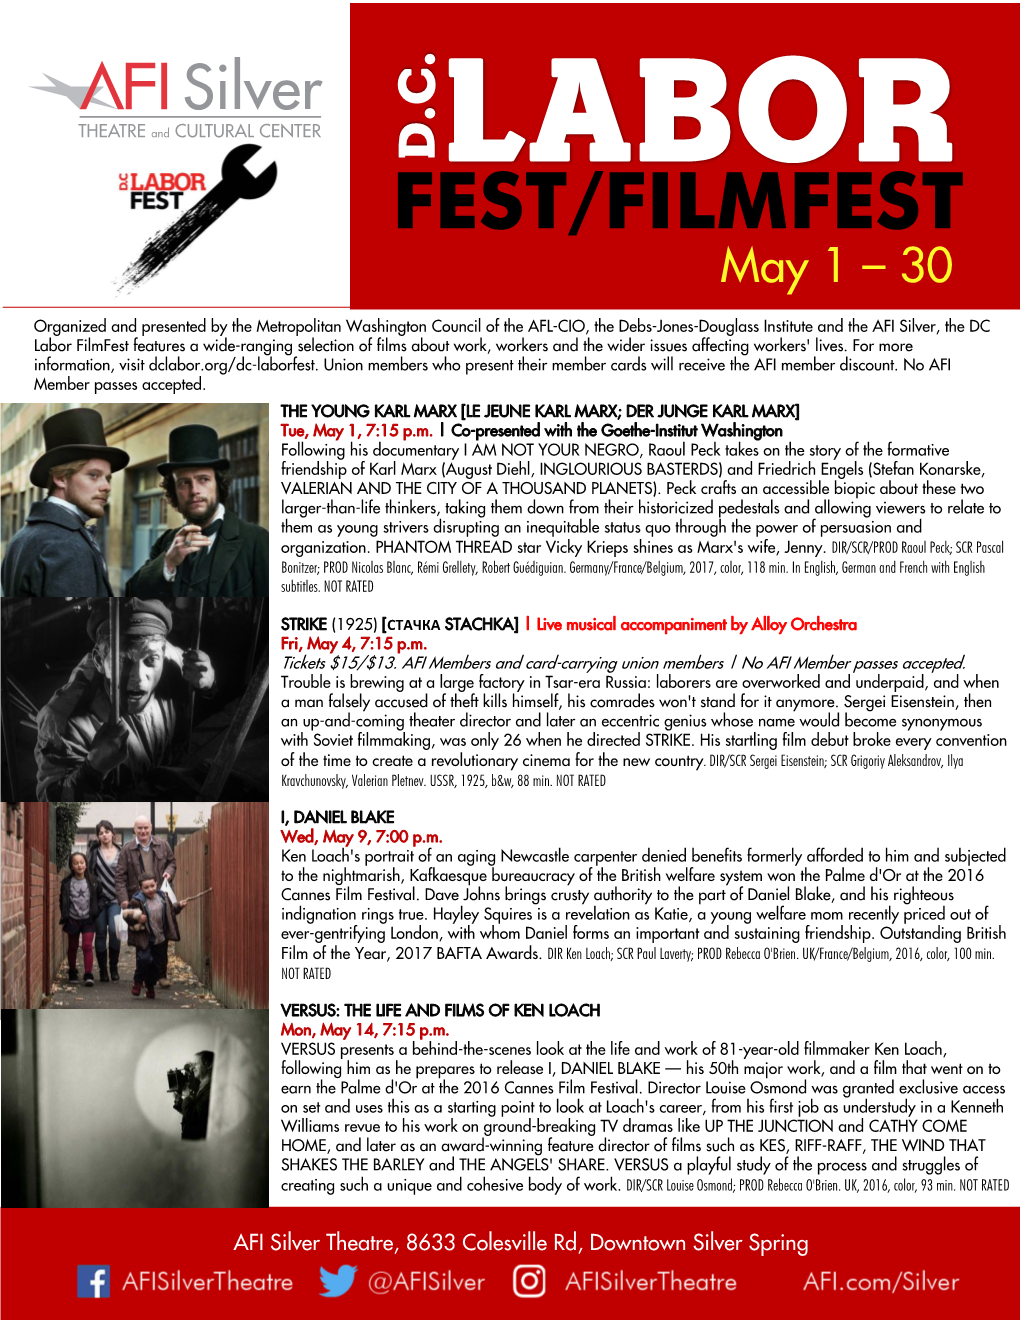 Fest/Filmfest